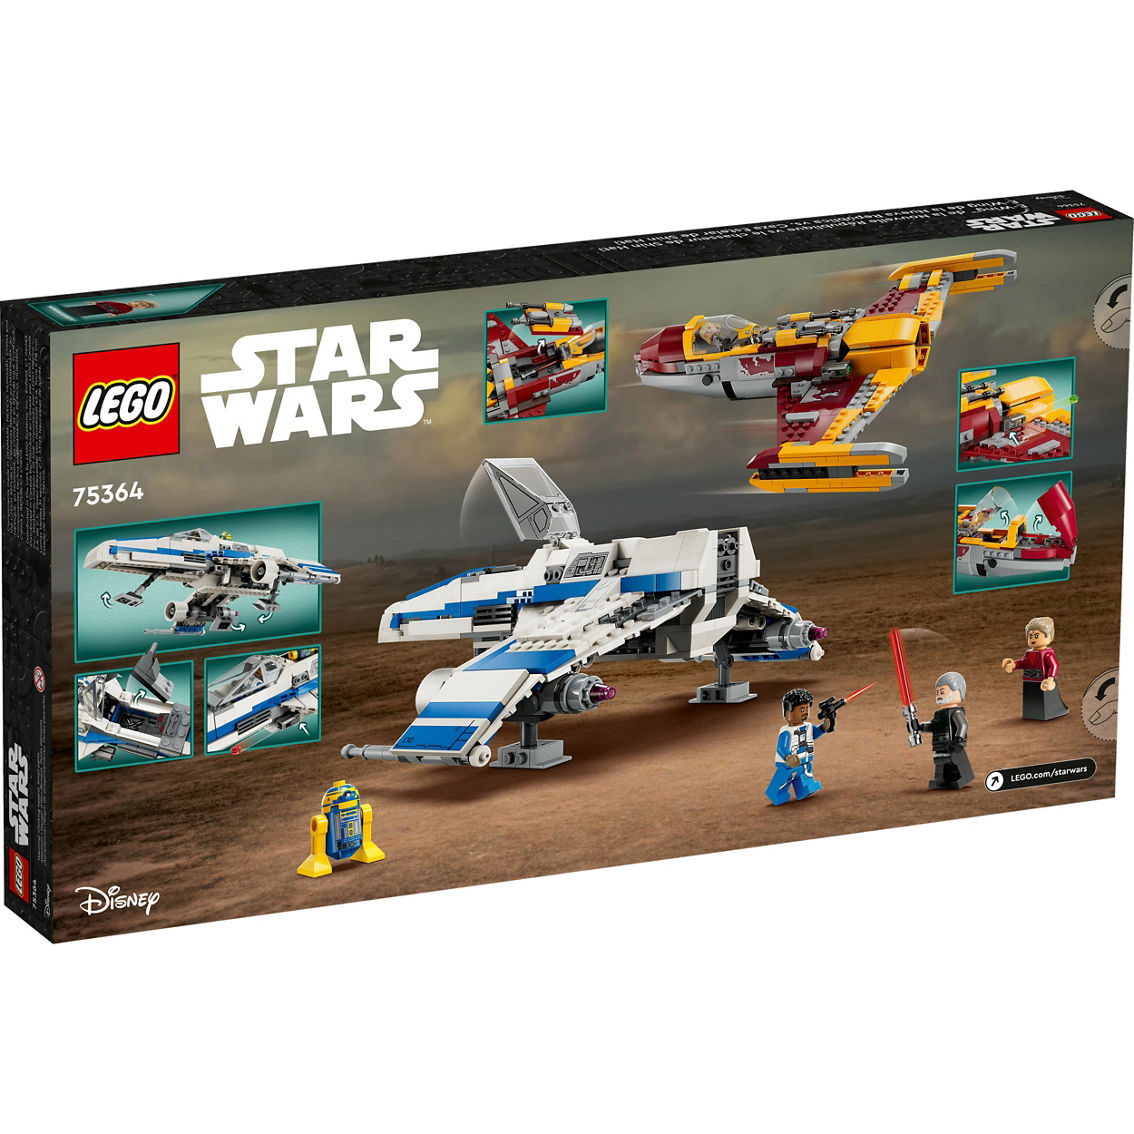 LEGO Star Wars New Republic E-Wing vs. Shin Hati’s Starfighter 75364 - Image 2 of 10